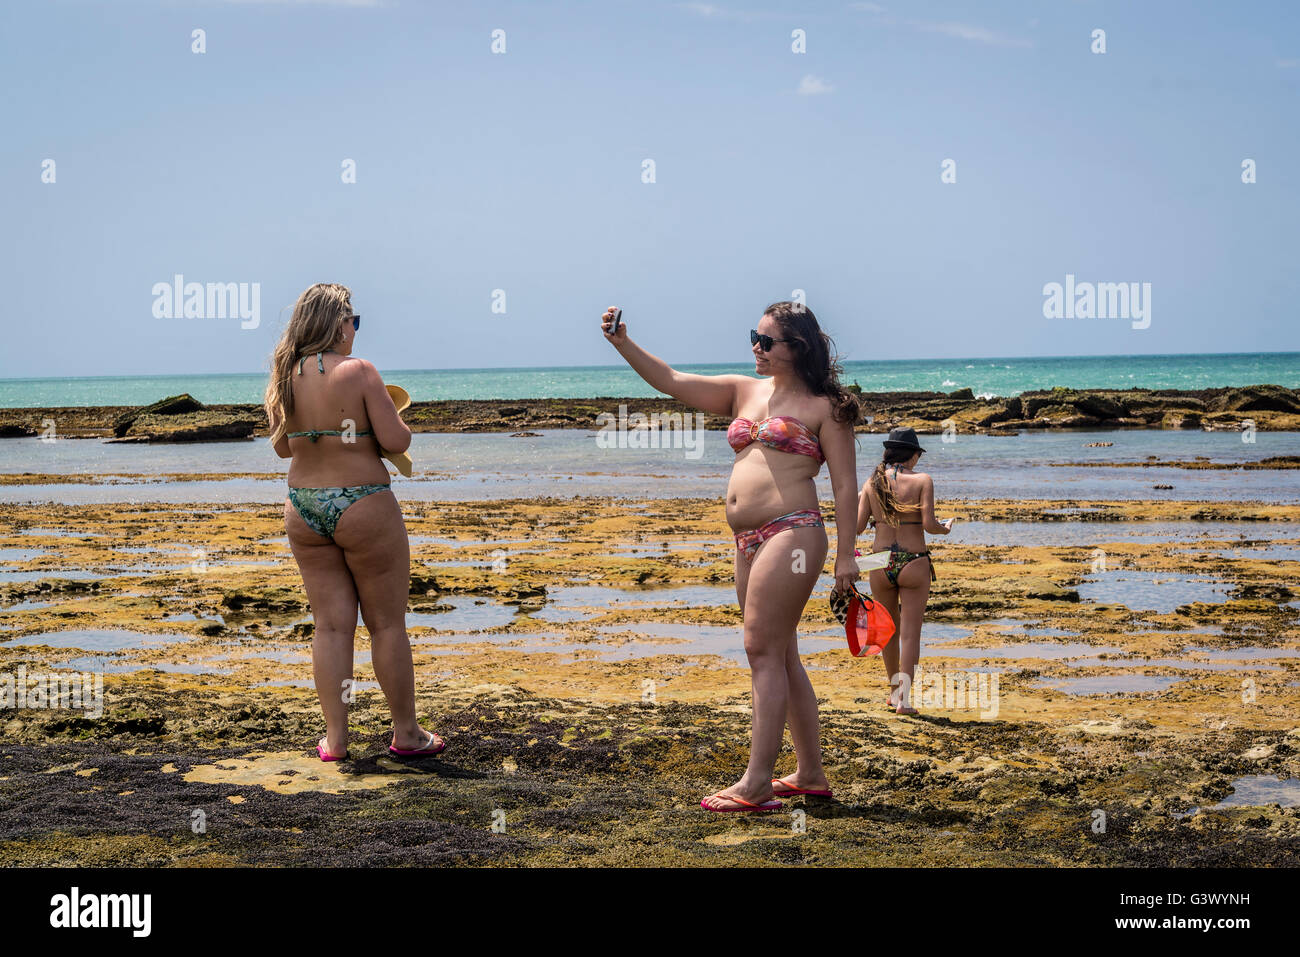 Woman taking selfies, Lagoon, Gunga Beach, Maceio, Alagoas, Brazil Stock Photo